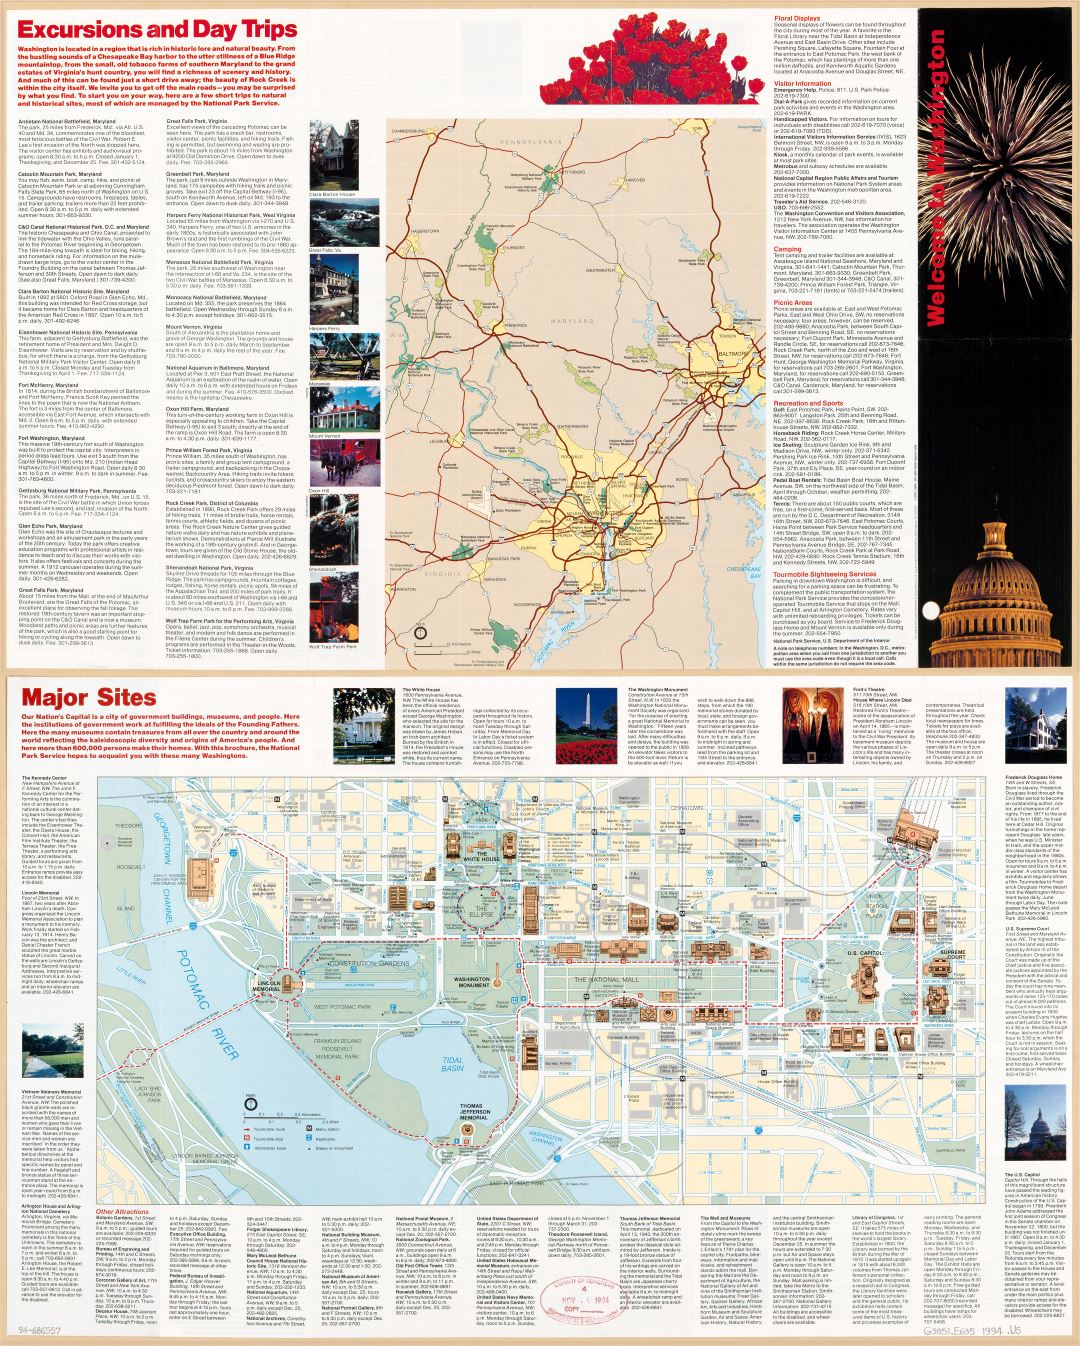 Large scale detailed Washington D.C. tourist map - 1994